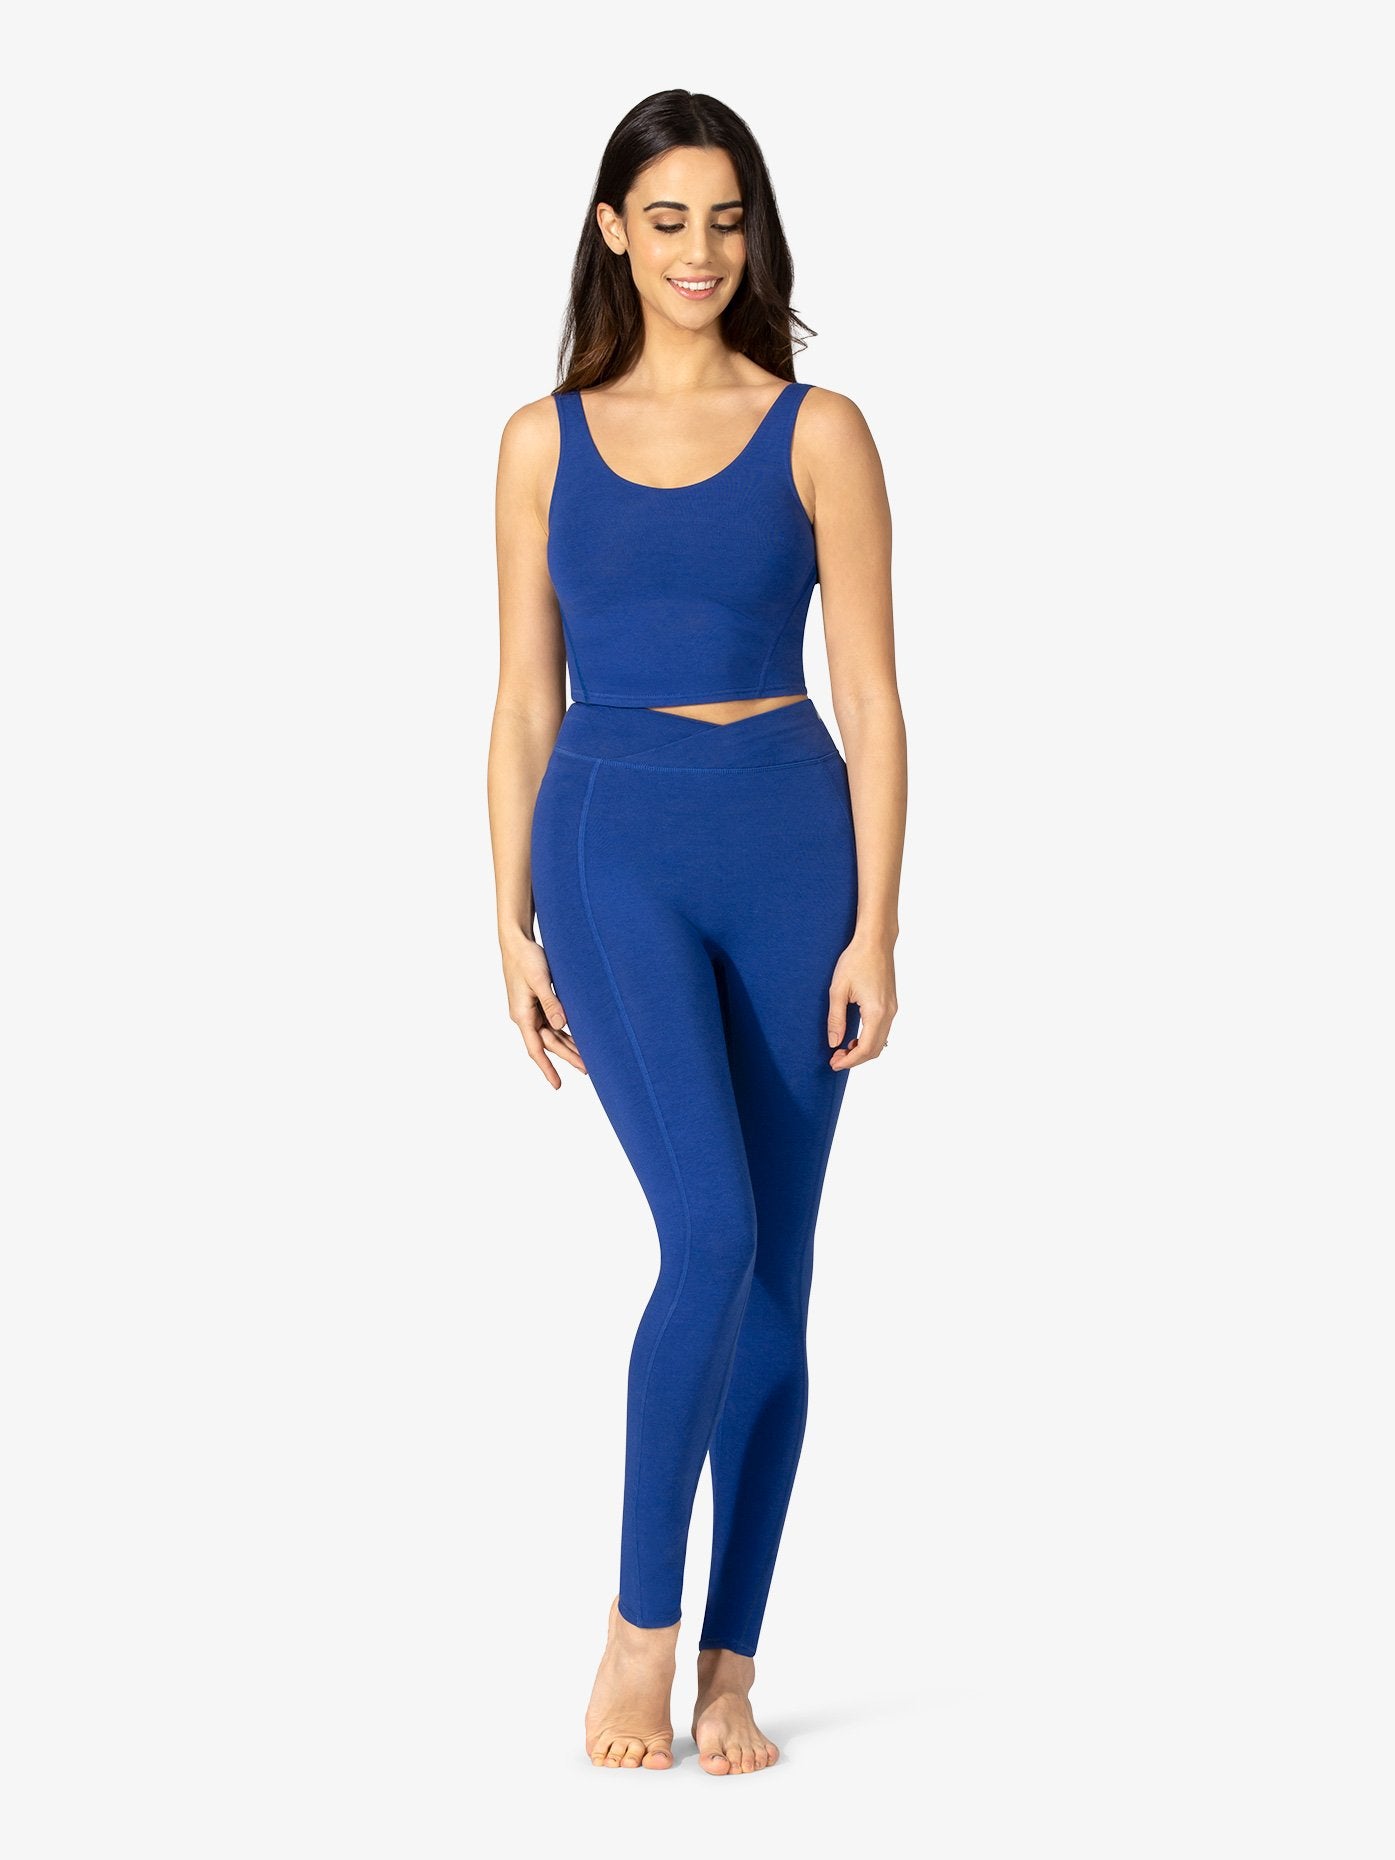 Women's bamboo cross-over full-length blue leggings